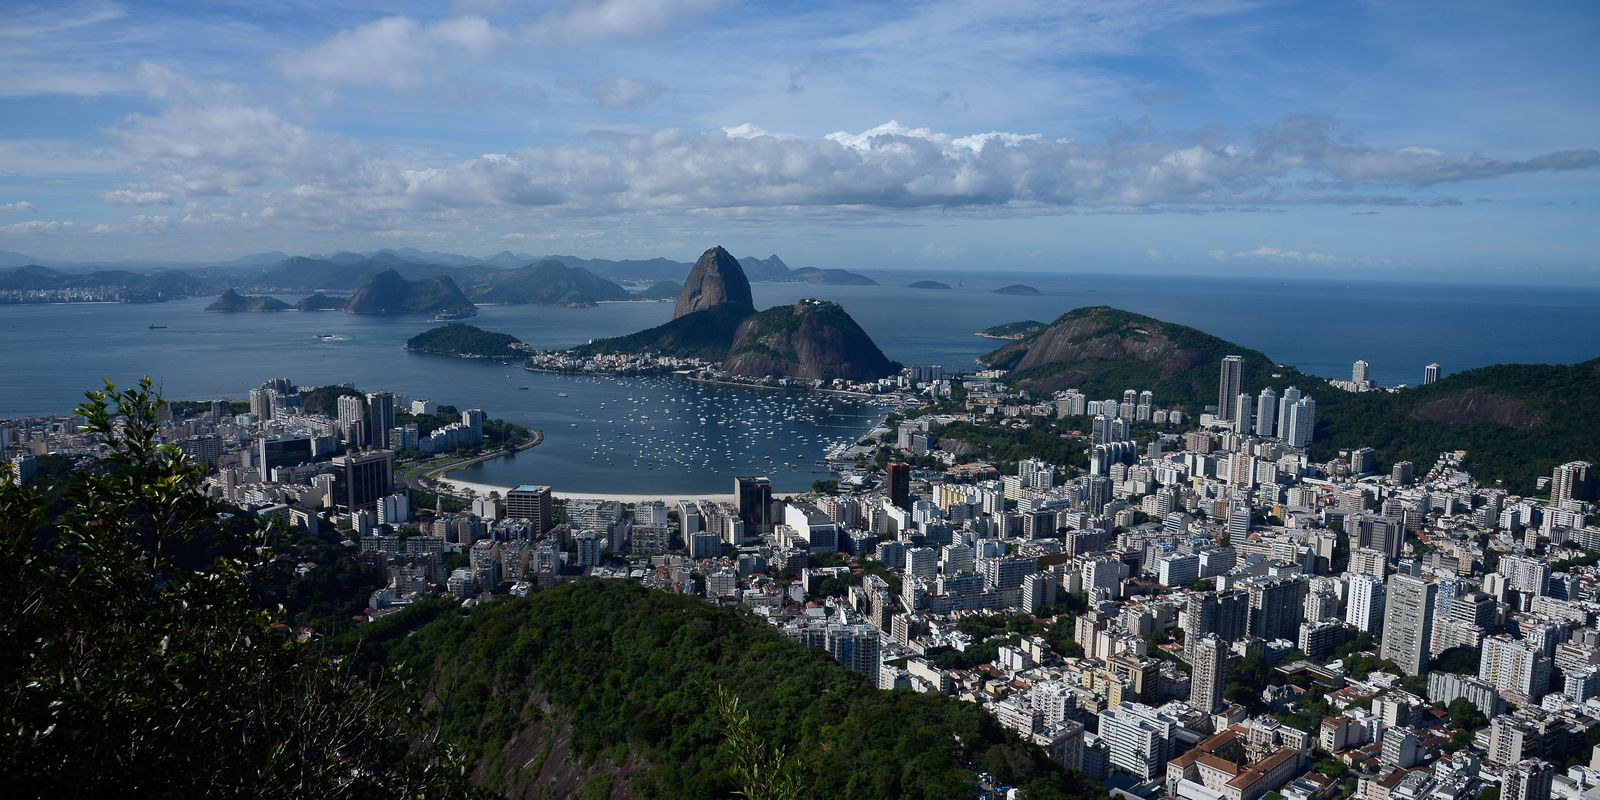 Jovens registram cartões postais do Rio em curso de fotografia